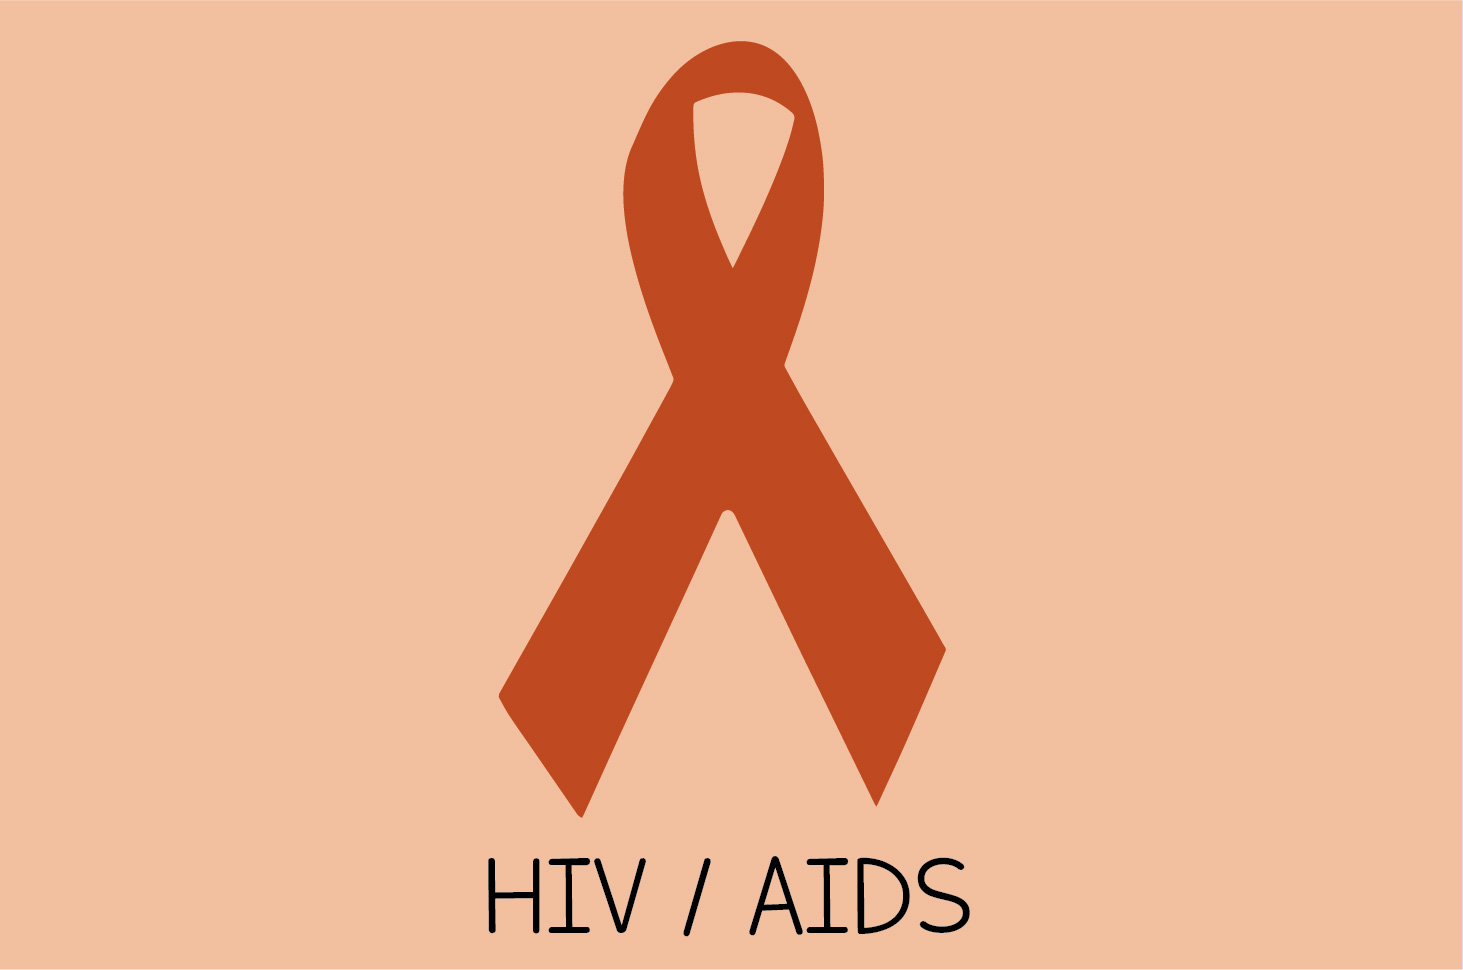 هذه هي وصمة المصابين بفيروس نقص المناعة المكتسبة ومرض الإيدز والتي لا تزال موجودة حتى يومنا هذا